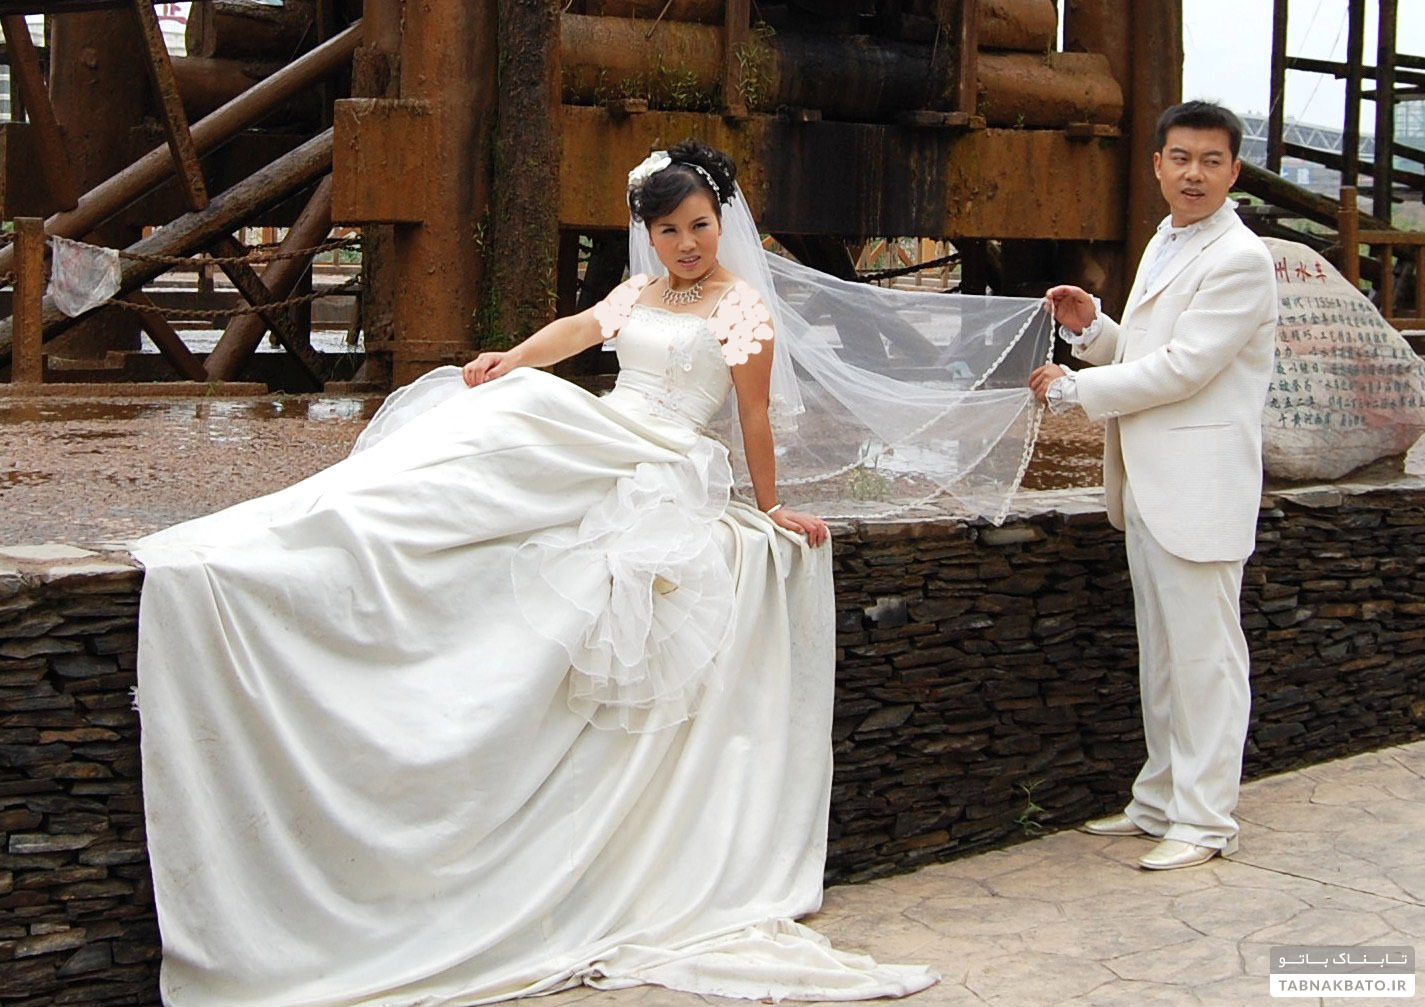 رویکردهای دولتی در چین برای کاهش هدایای عروس